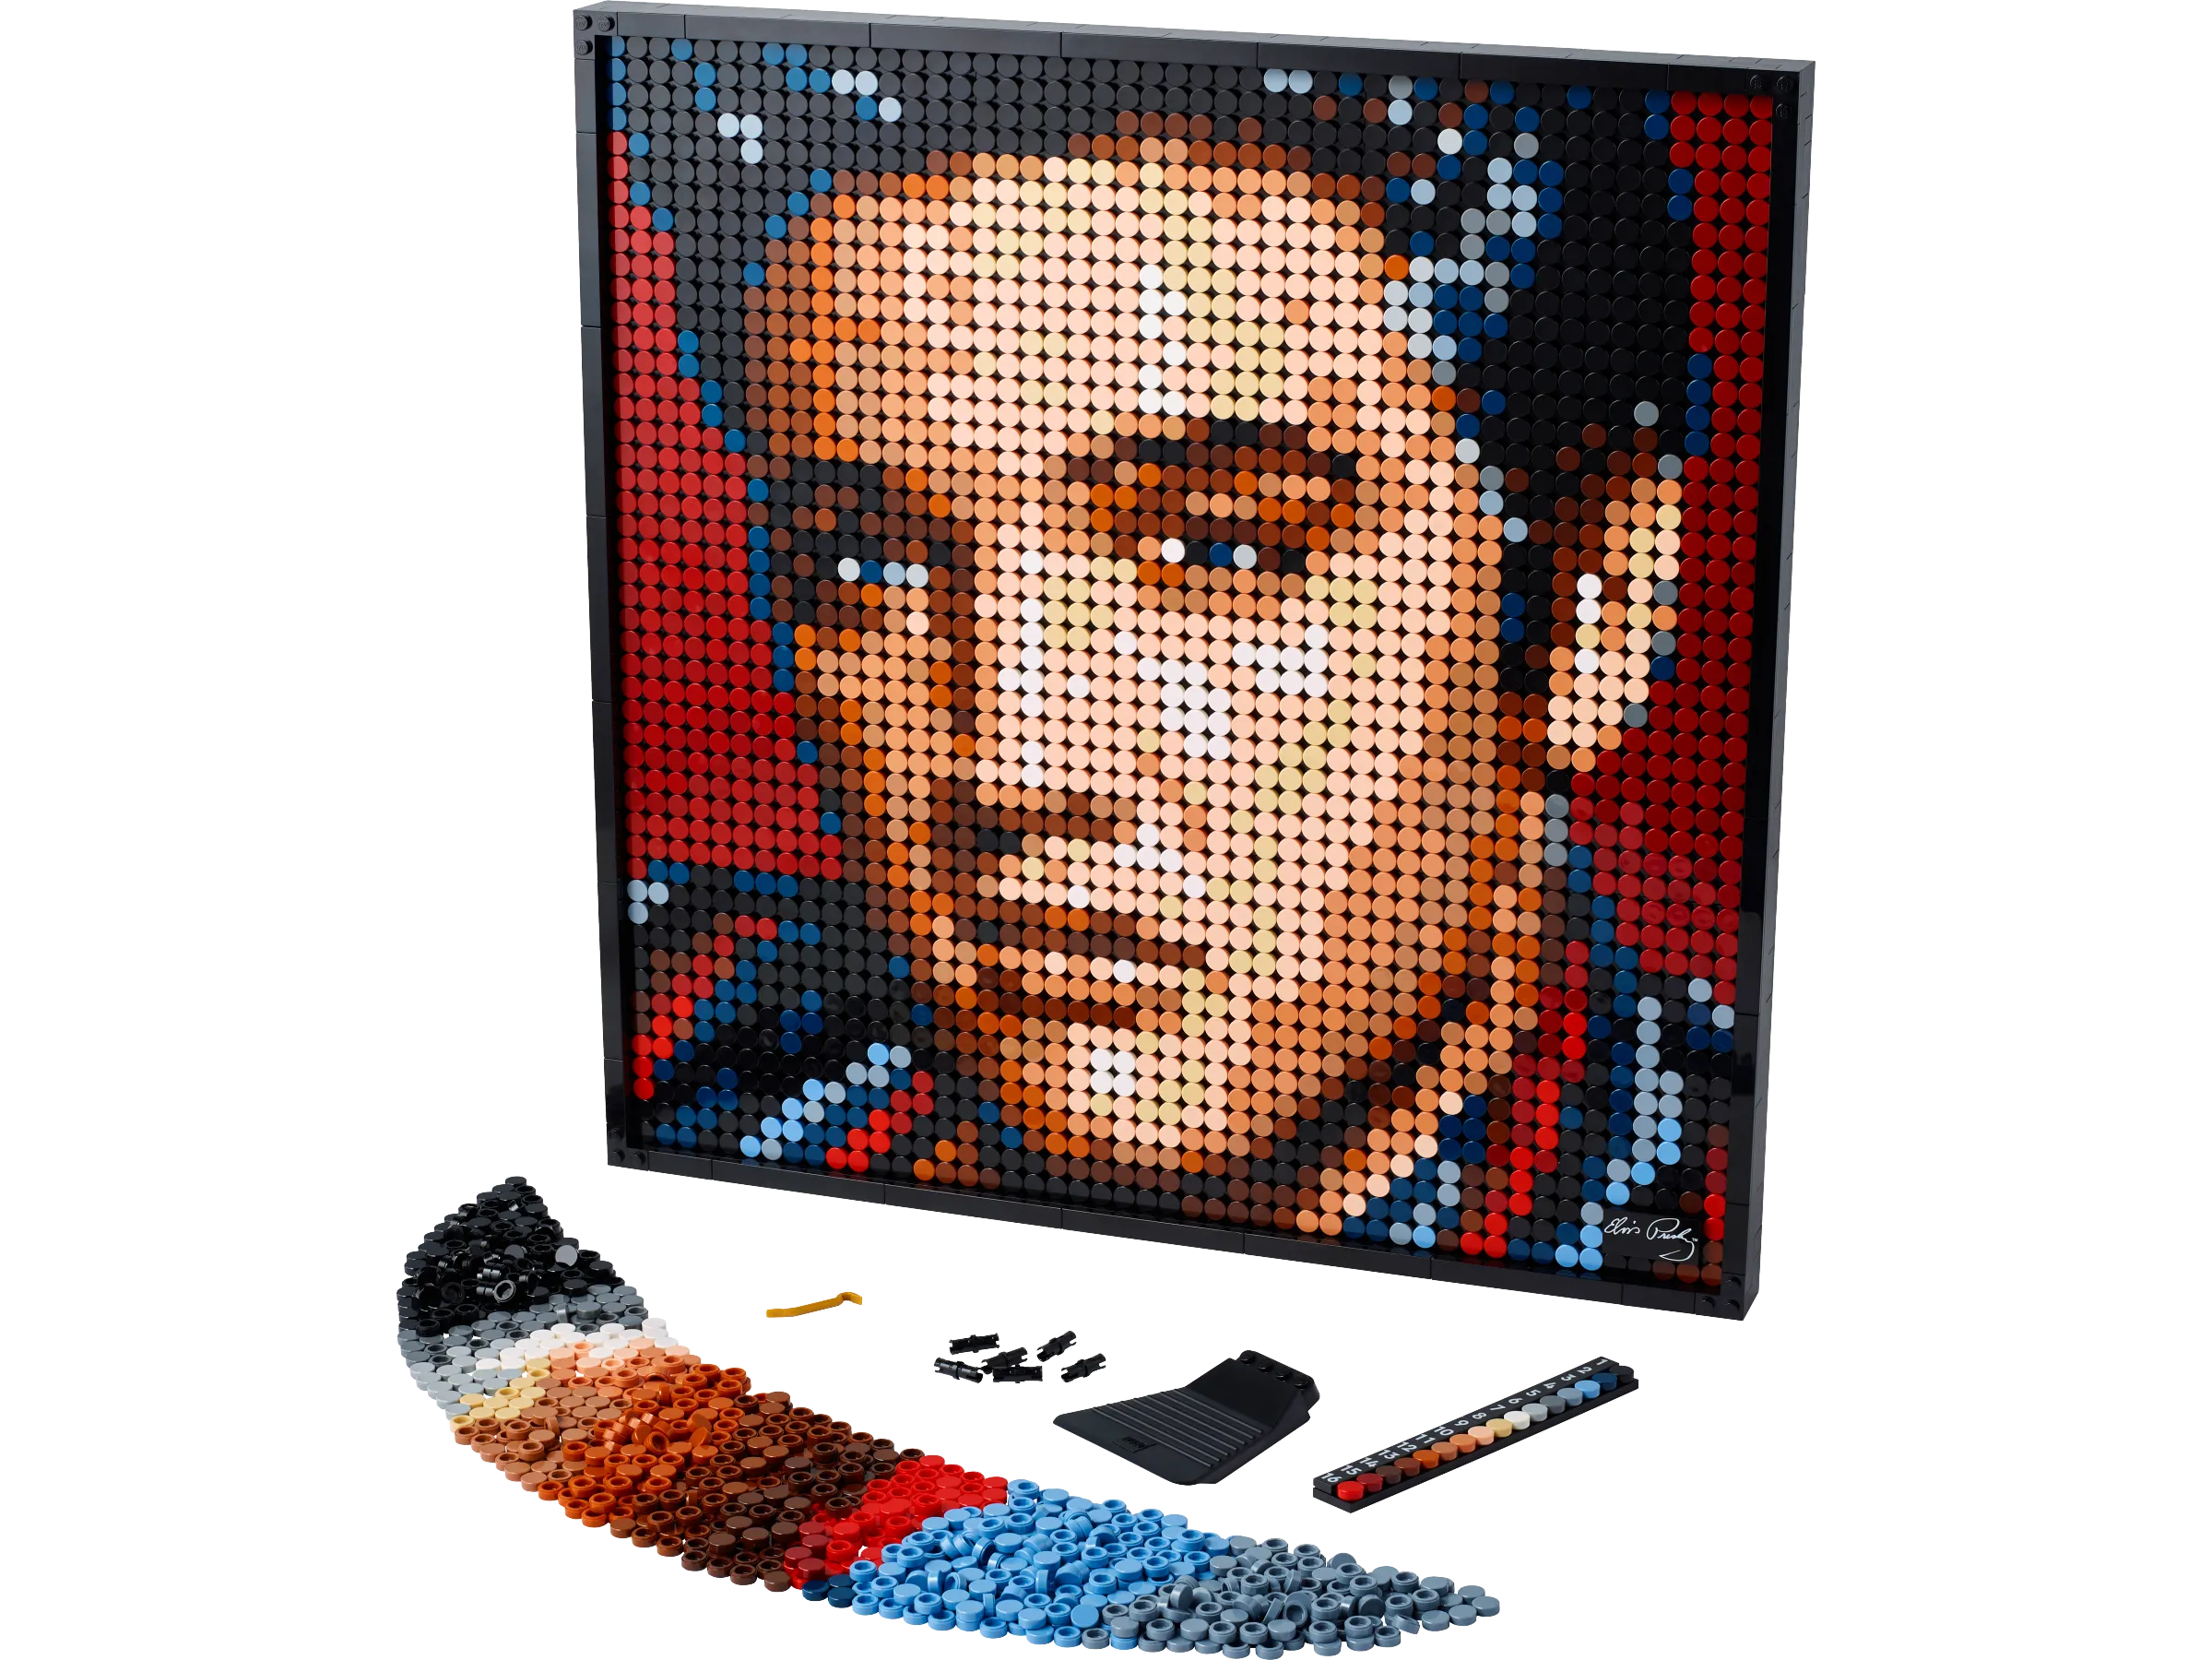 Art Elvis Presley “The King” Gallery